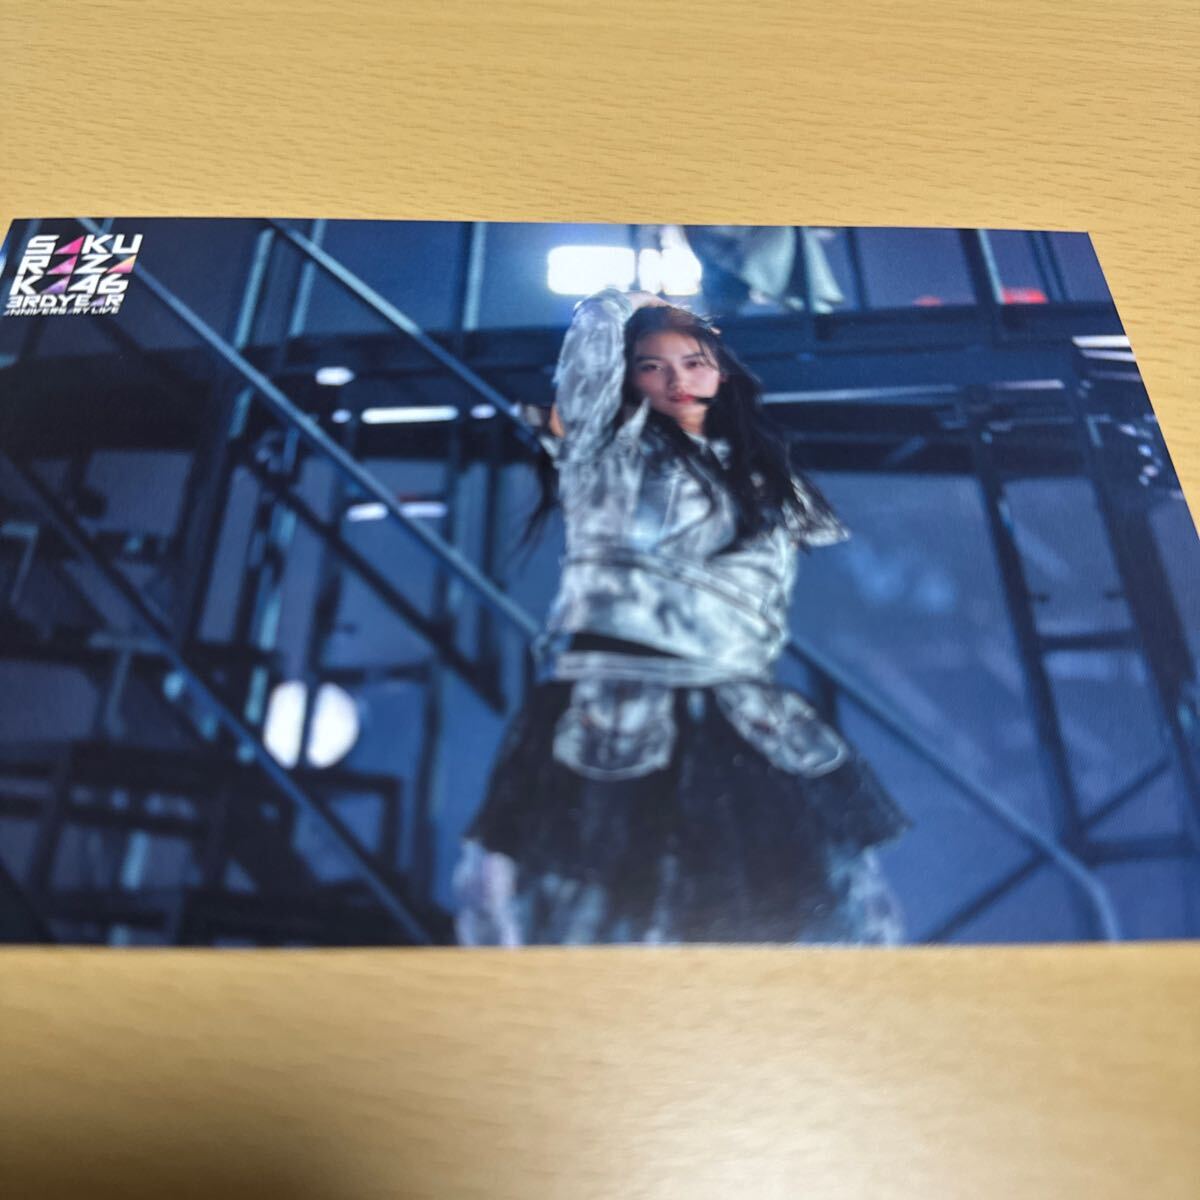 櫻坂46 【3rd YEAR ANNIVERSARY LIVE at ZOZO MARINE STADIUM】Blu-ray(完全生産限定盤) 封入特典 ポストカード6枚セット 1点【送料無料】_画像4